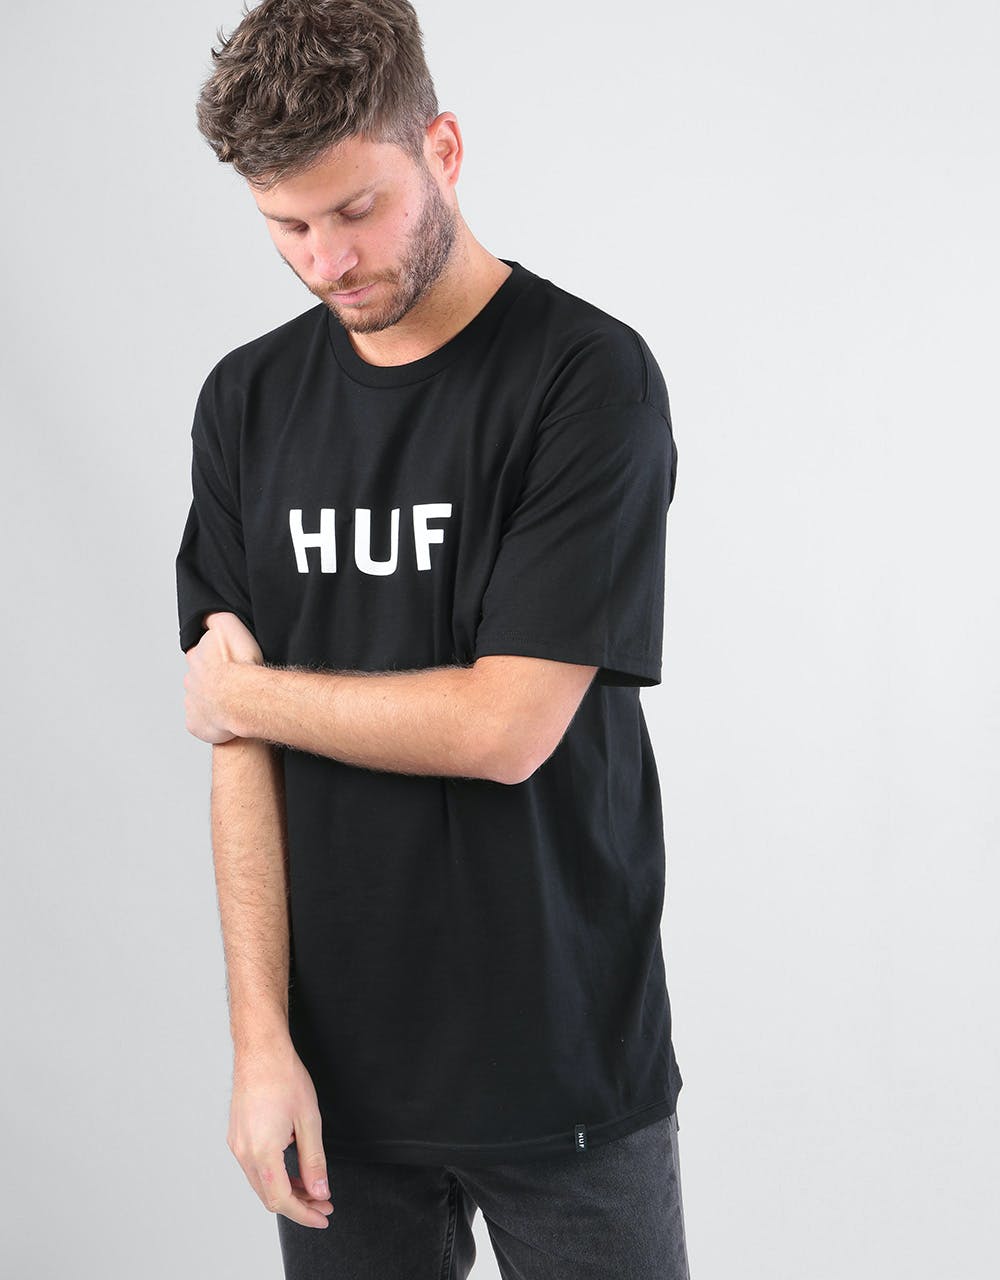 HUF Original Logo T-Shirt - Black